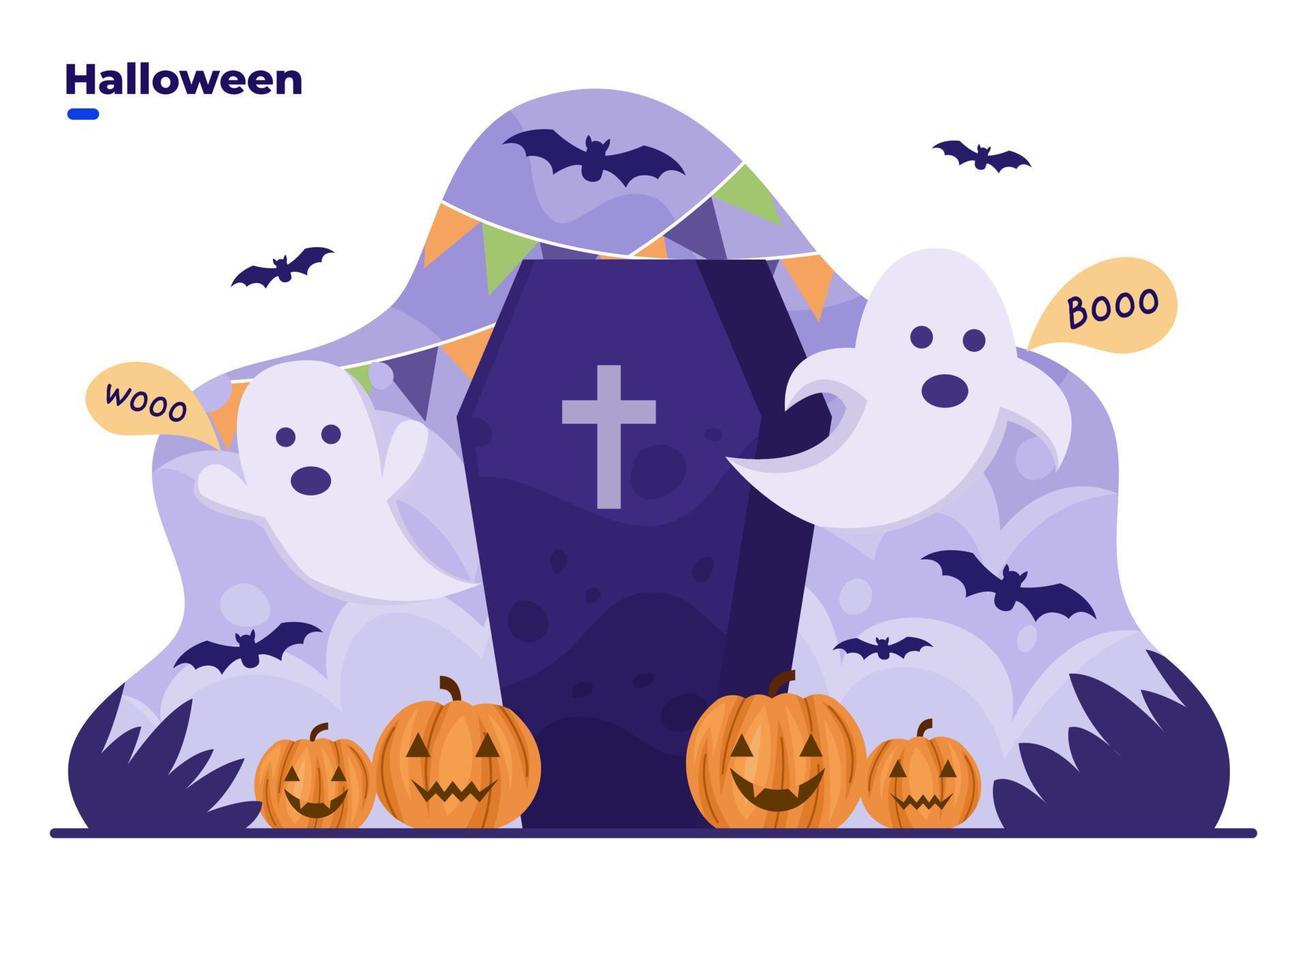 feliz halloween ilustração bonito dos desenhos animados com personagem fantasma e decoração de halloween. desenho de fantasma assustador. pode ser usado para cartão de felicitações, convite, cartaz, web, cartão postal, mídia social. vetor